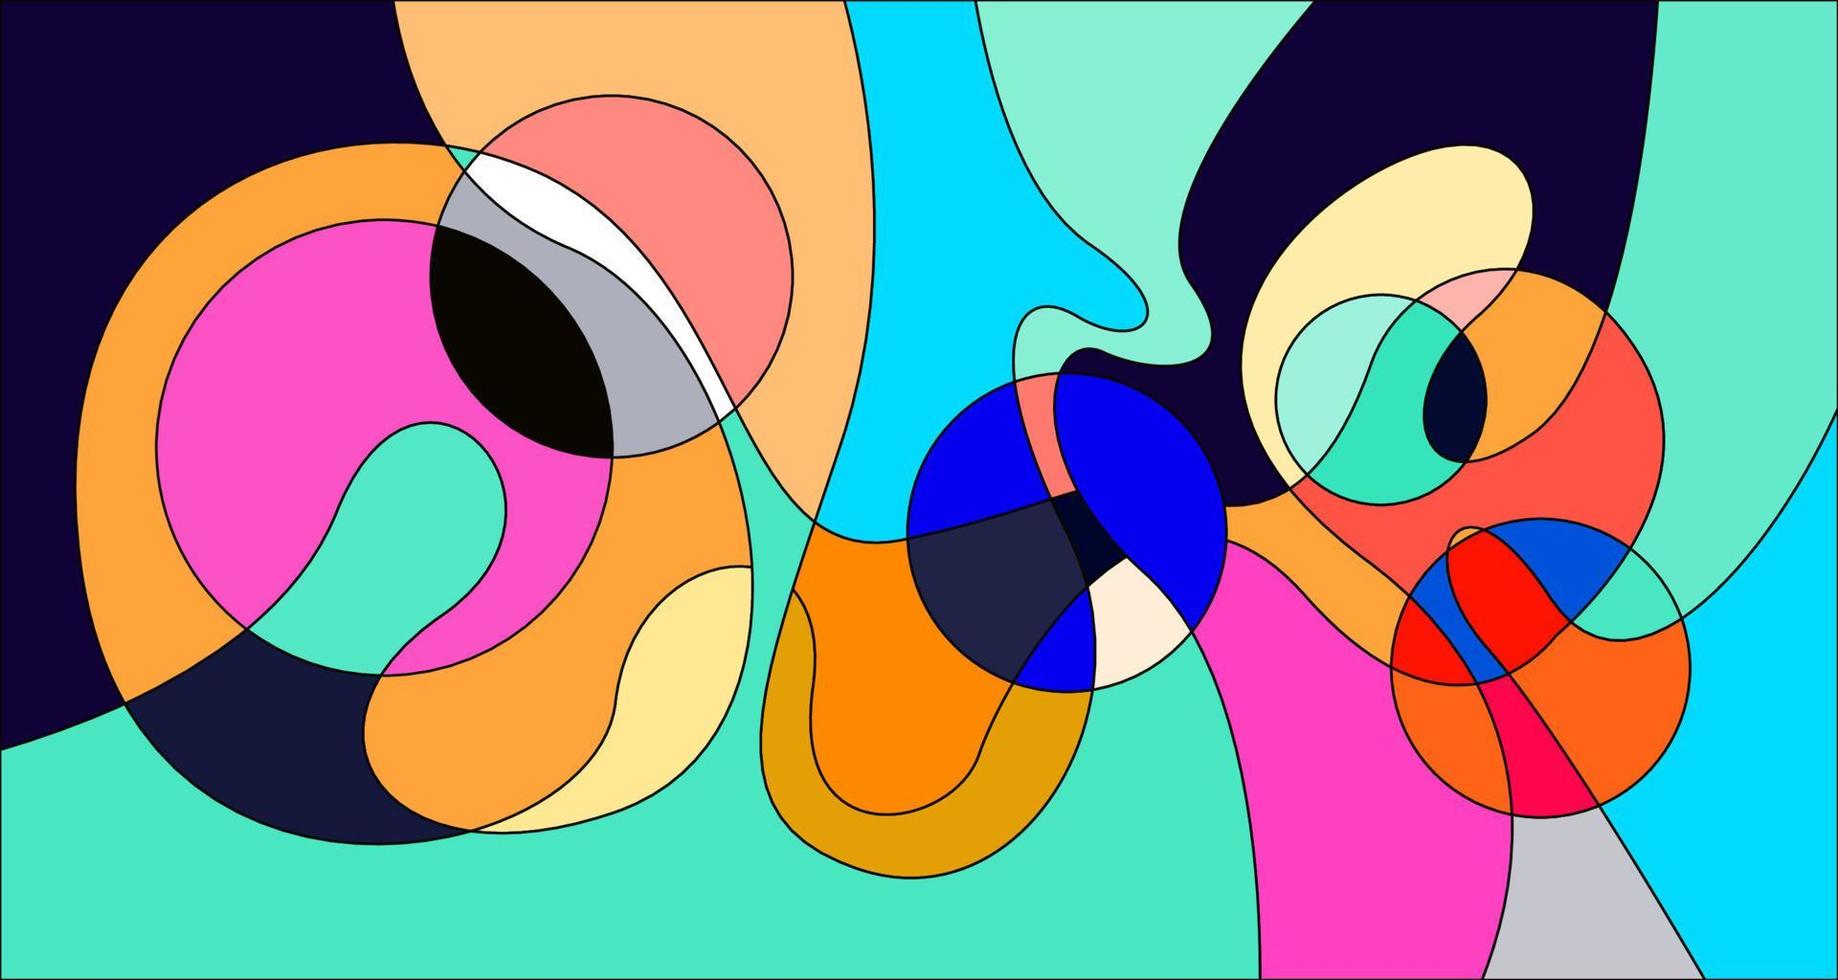 Vector colorido abstracto psicodélico líquido y patrón de fondo fluido